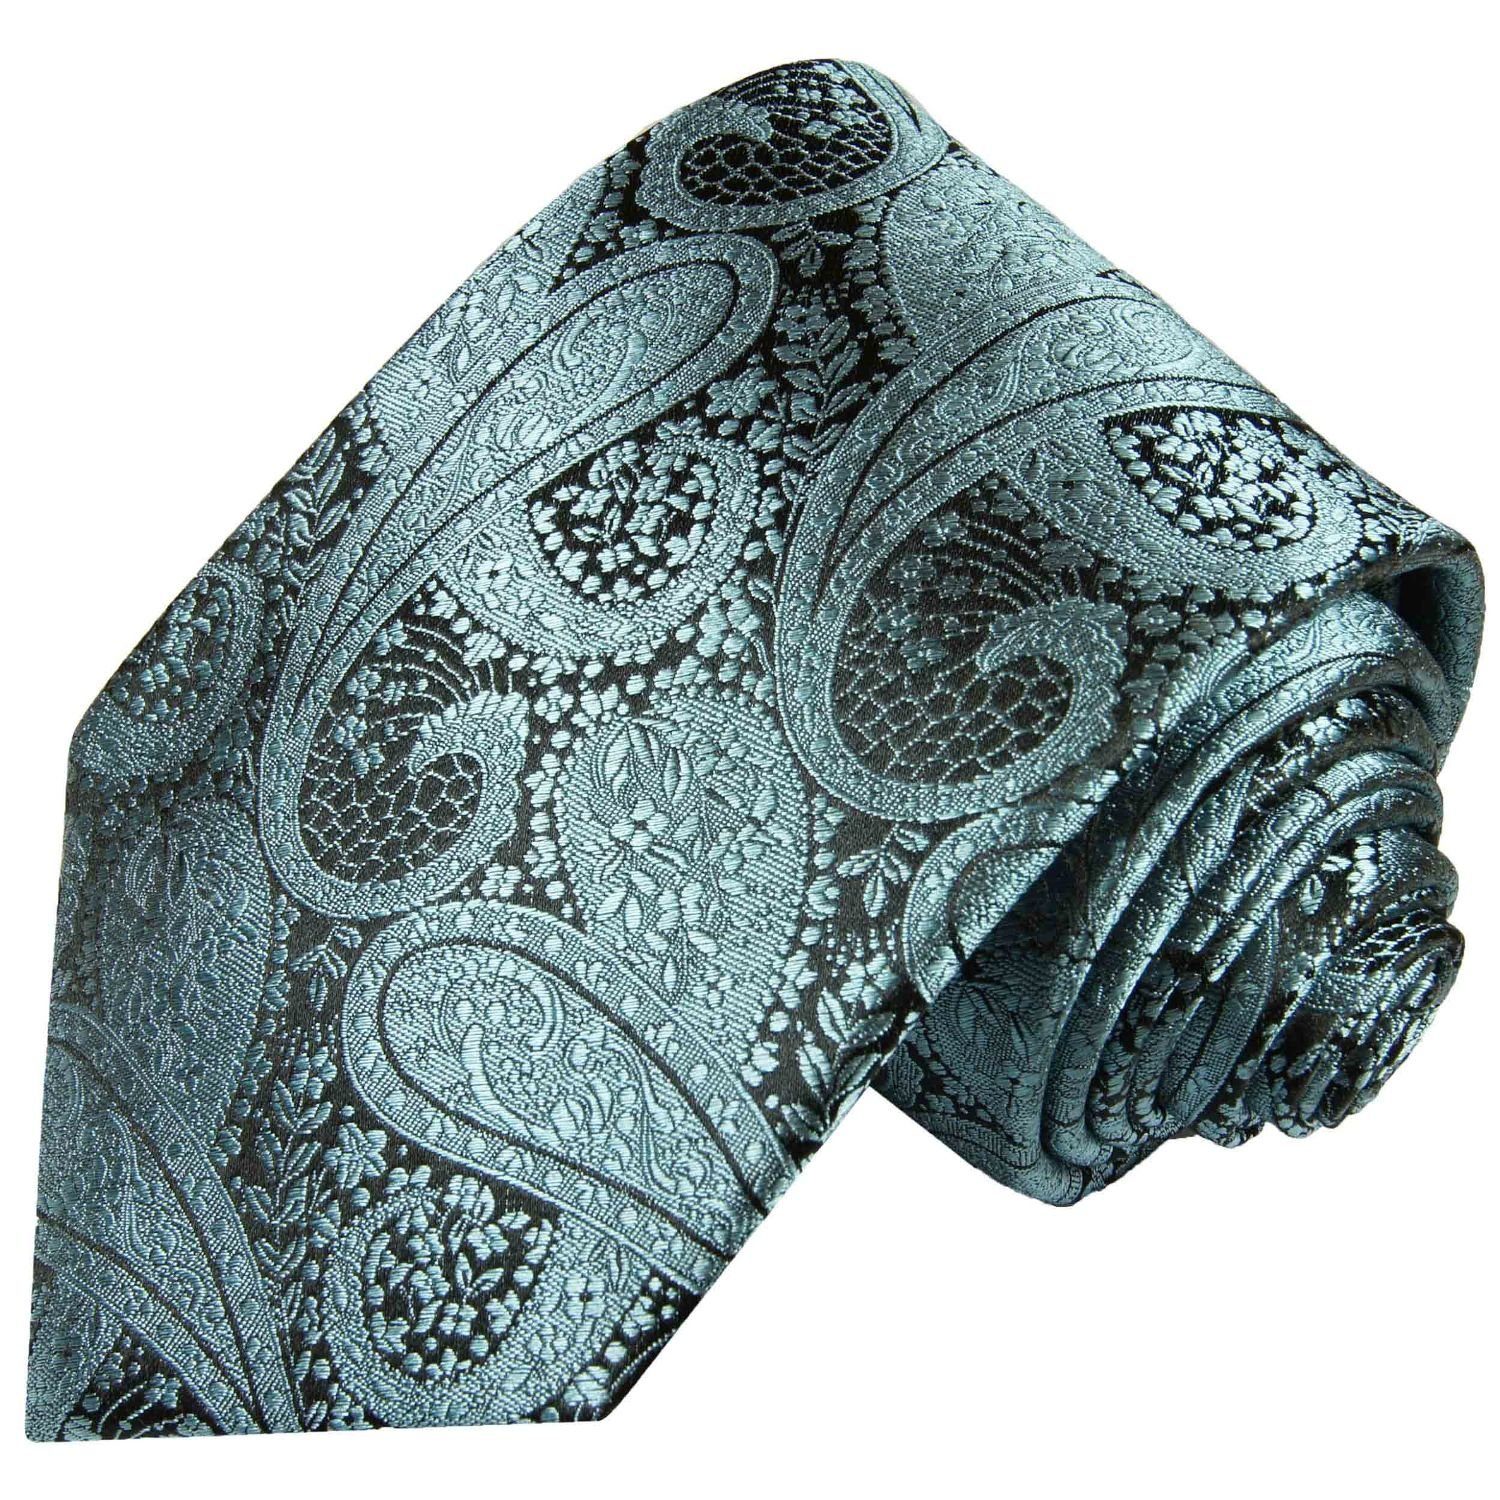 Billiges Originalprodukt Paul Malone Krawatte brokat Schmal schwarz Herren Seide 590 Schlips 100% türkis (6cm), Seidenkrawatte Elegante paisley